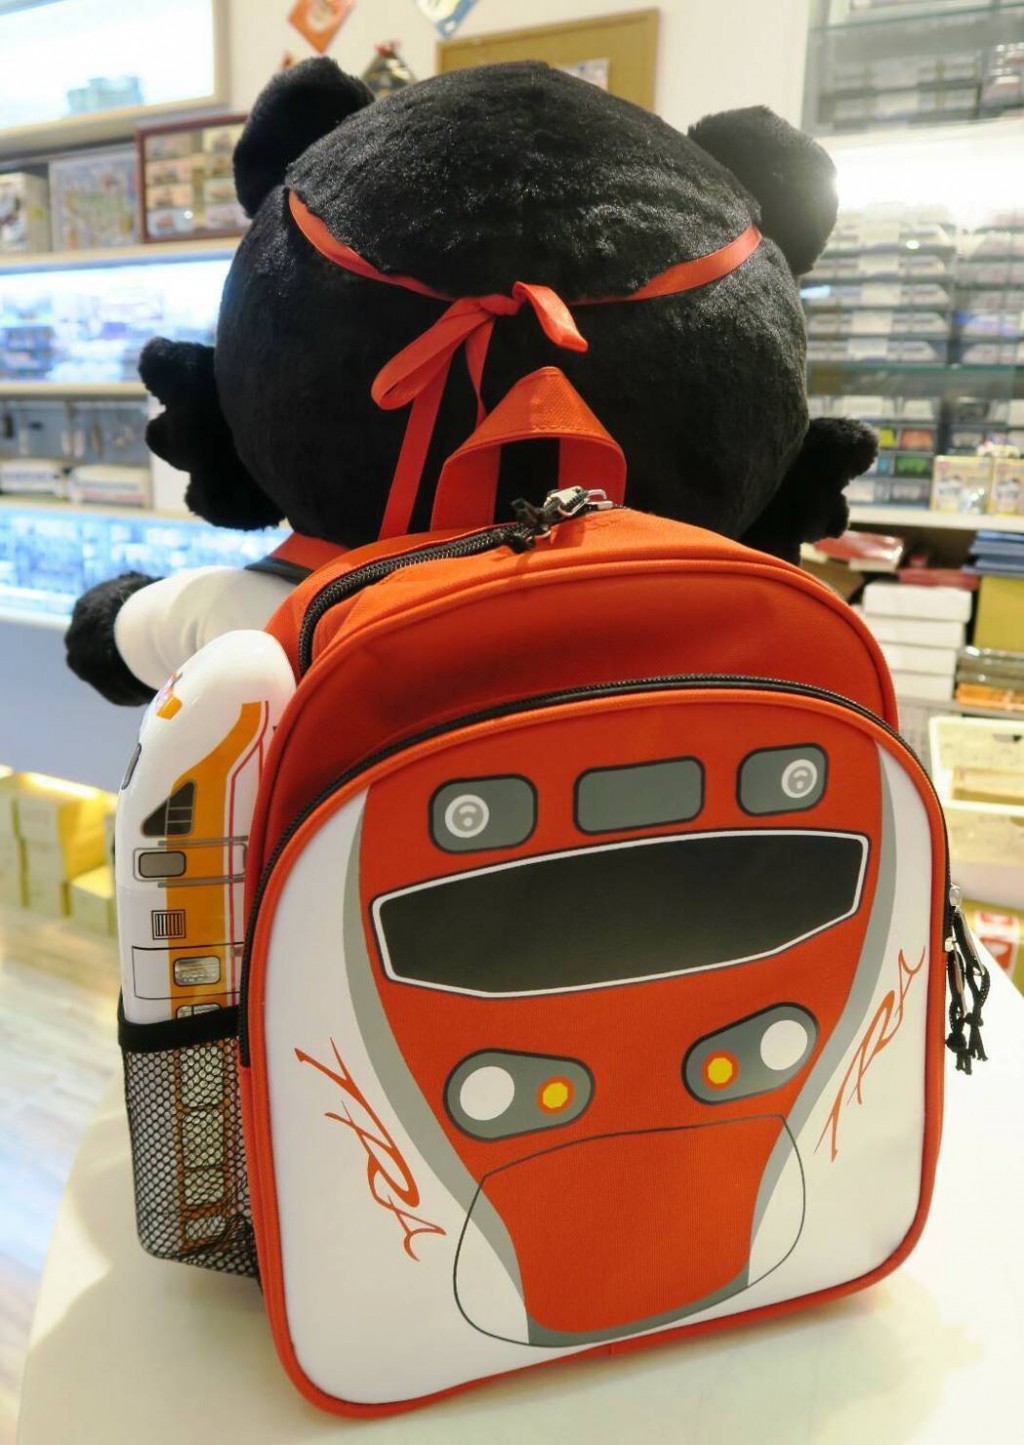 Nhân dịp Tết Nhi đồng, Cục Đường sắt Đài Loan (TRA) cũng đã cho ra mắt sản phẩm ba lô dành cho trẻ em hình Hello Kitty, hình tàu hỏa đi cùng các loại bút chì màu, tẩy, chai nước và mũ. 